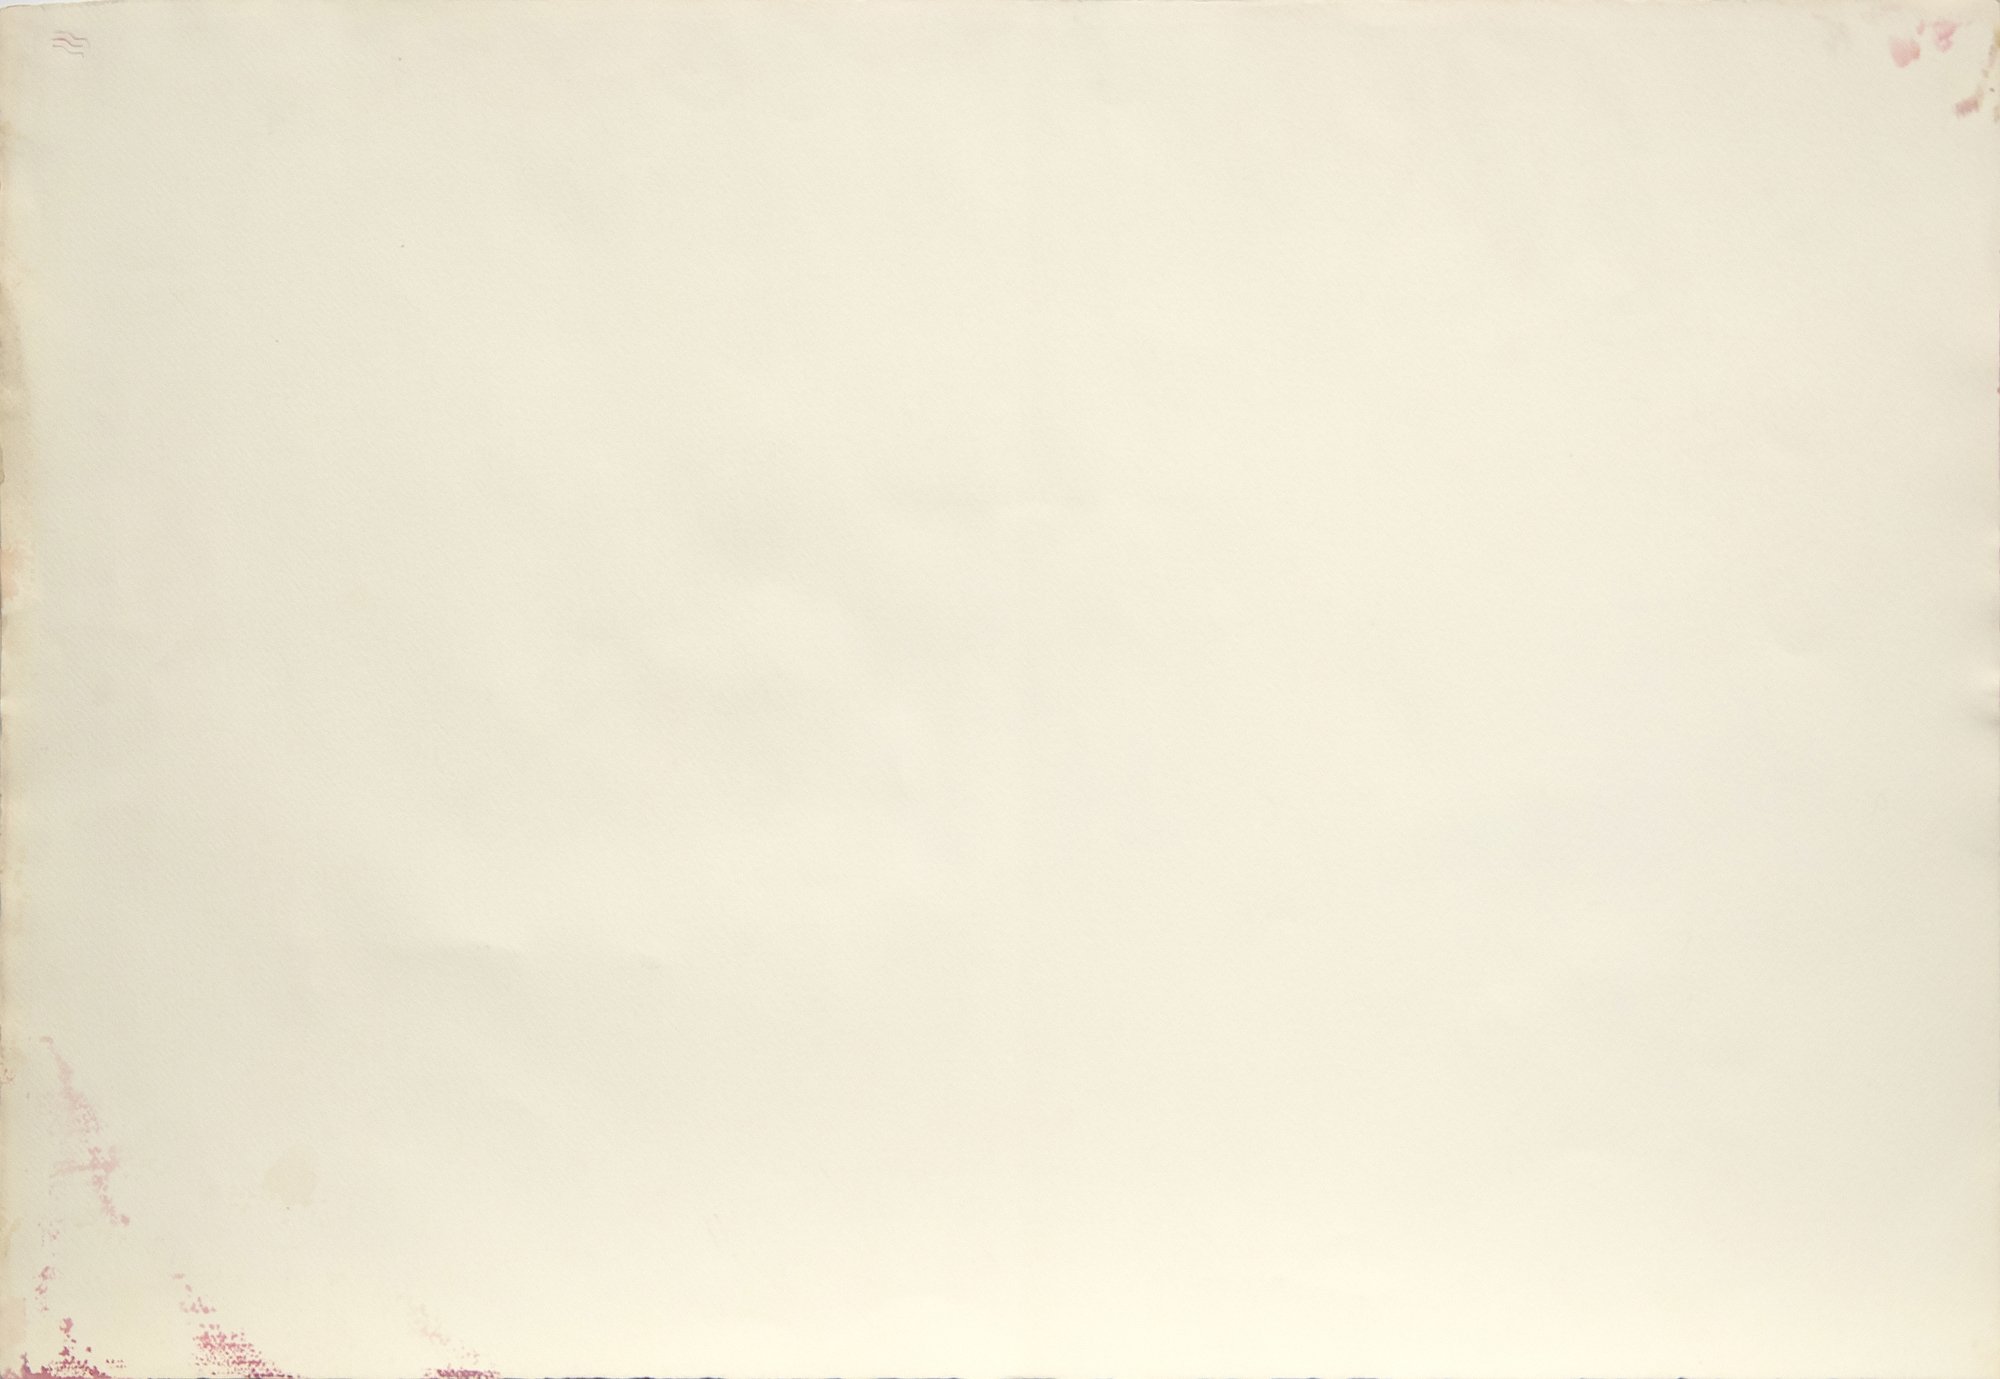 ポール・ジェンキンス - 無題 - 水彩画と紙のインク - 29 3/4 x 42 3/4 in.